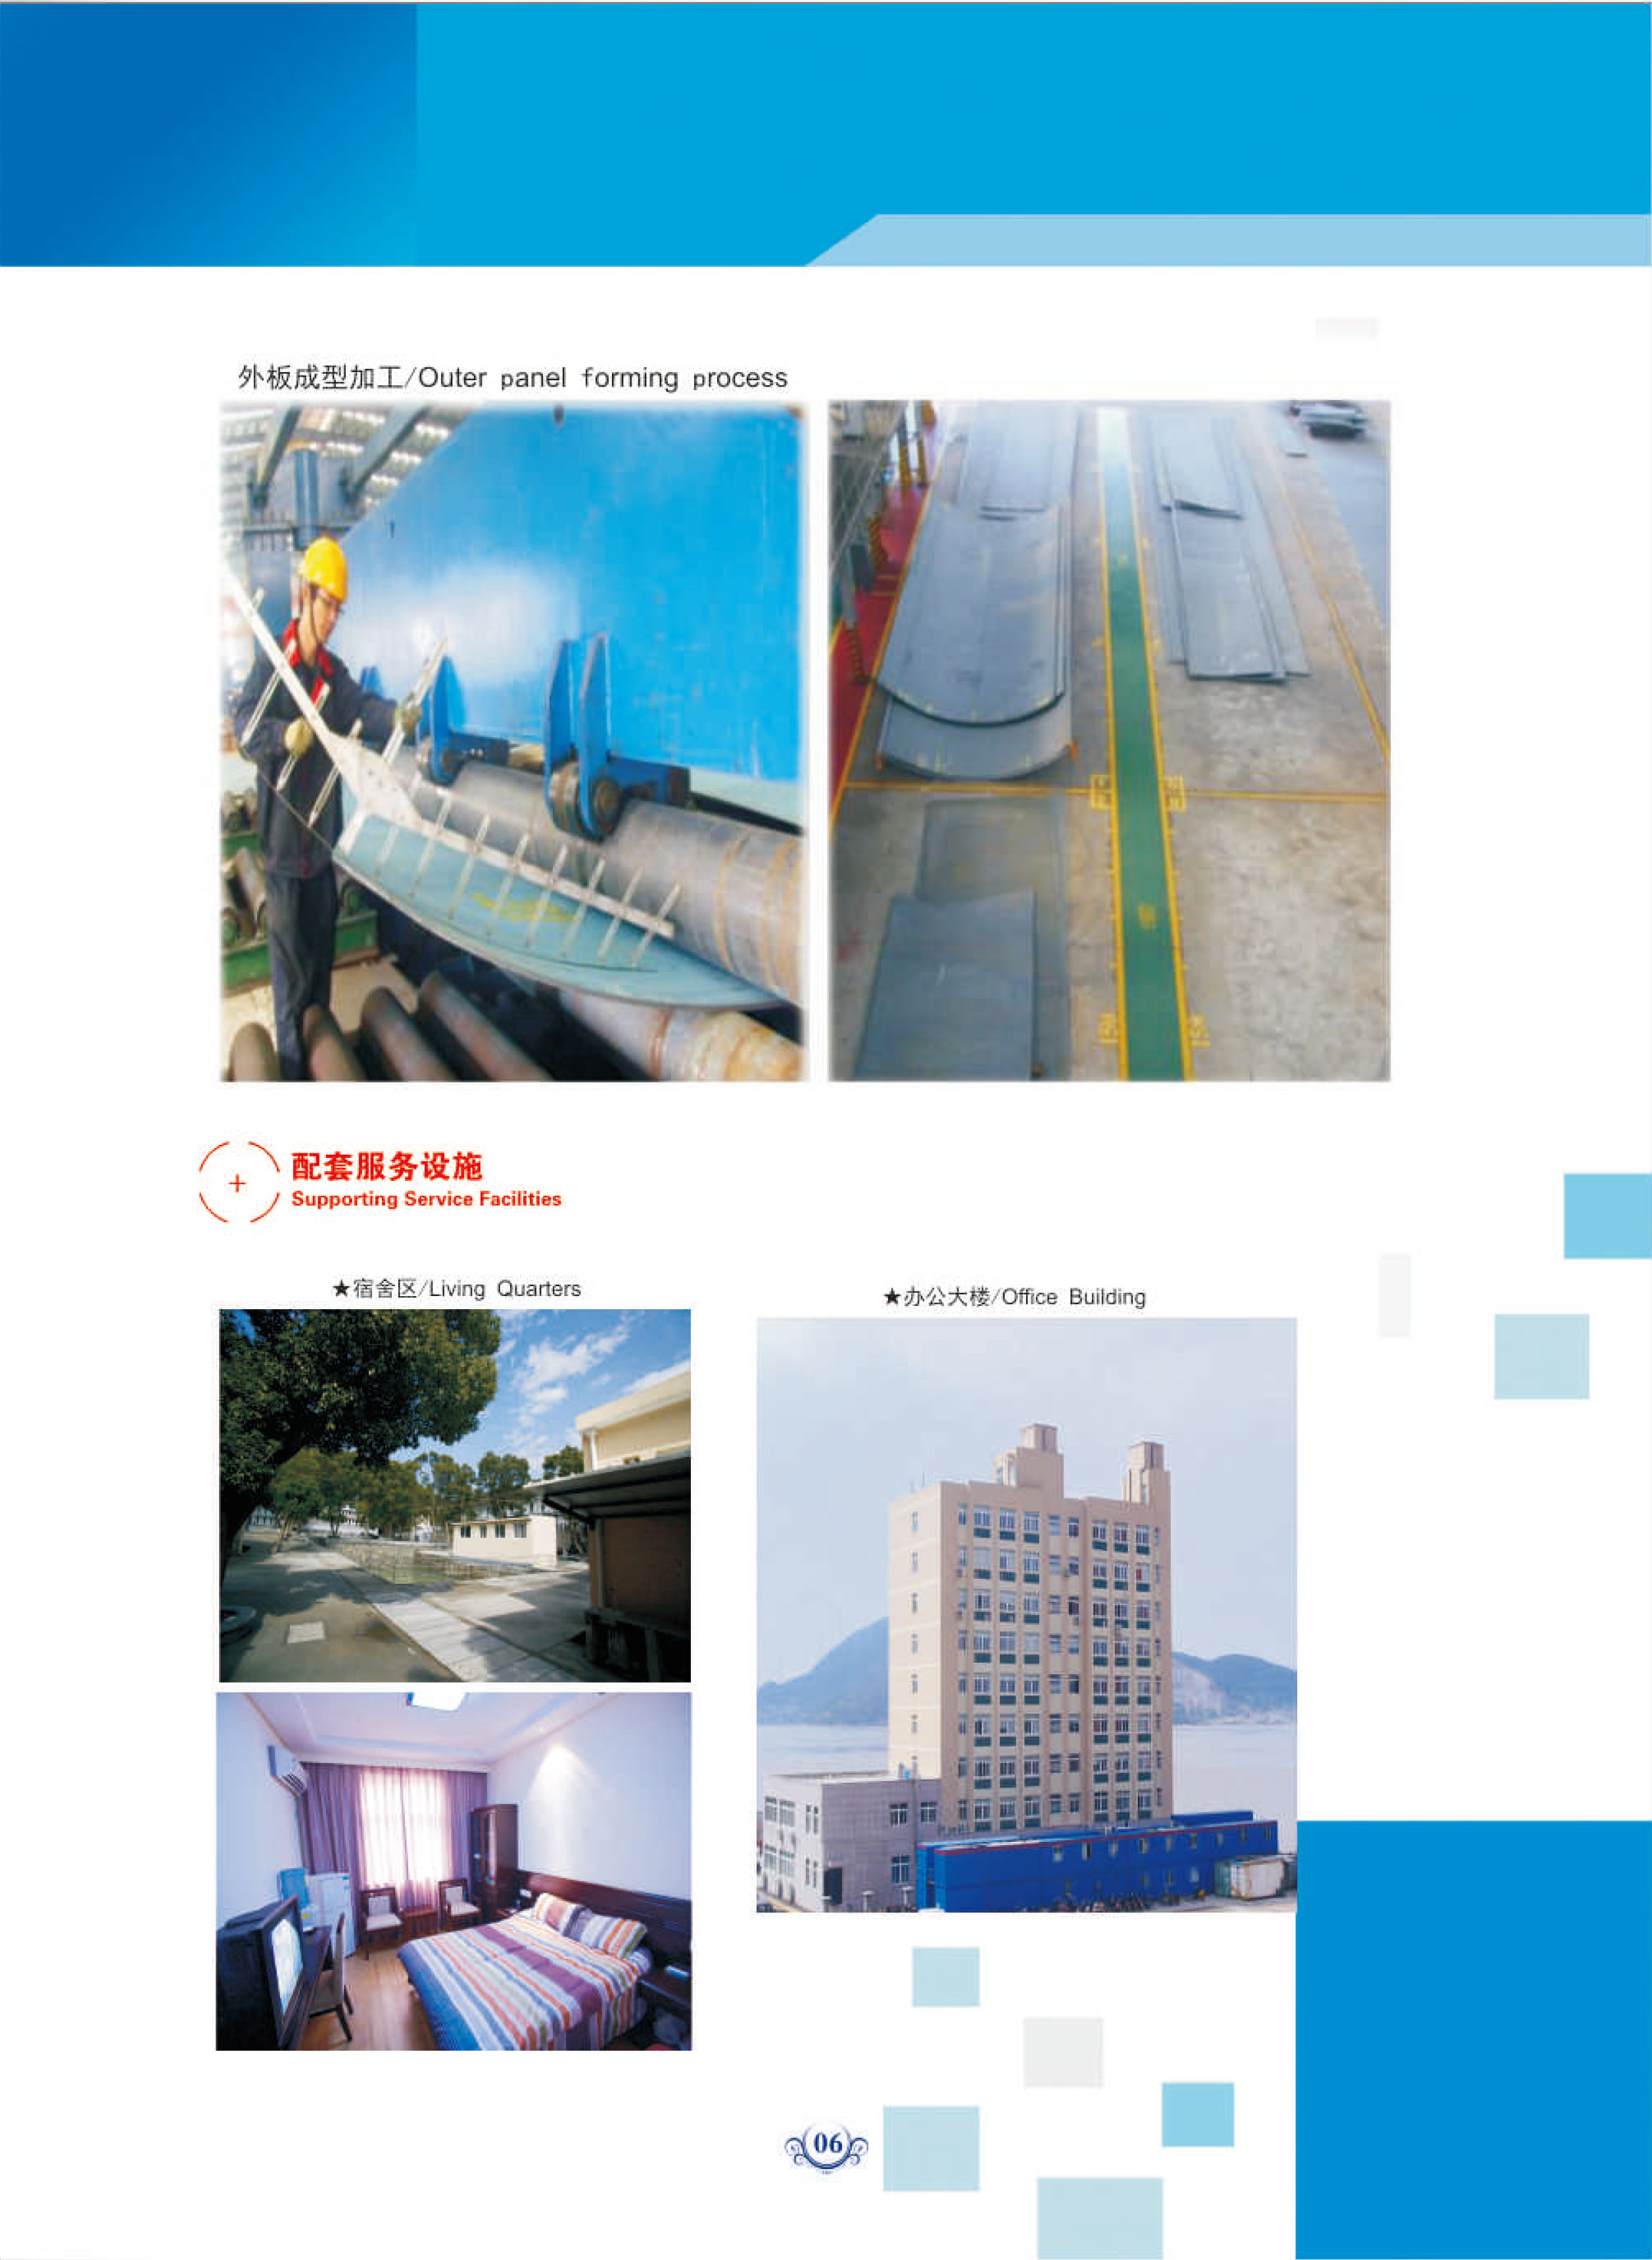 ZheJiang Peninsula Ship Industry Co.，Ltd(图7)